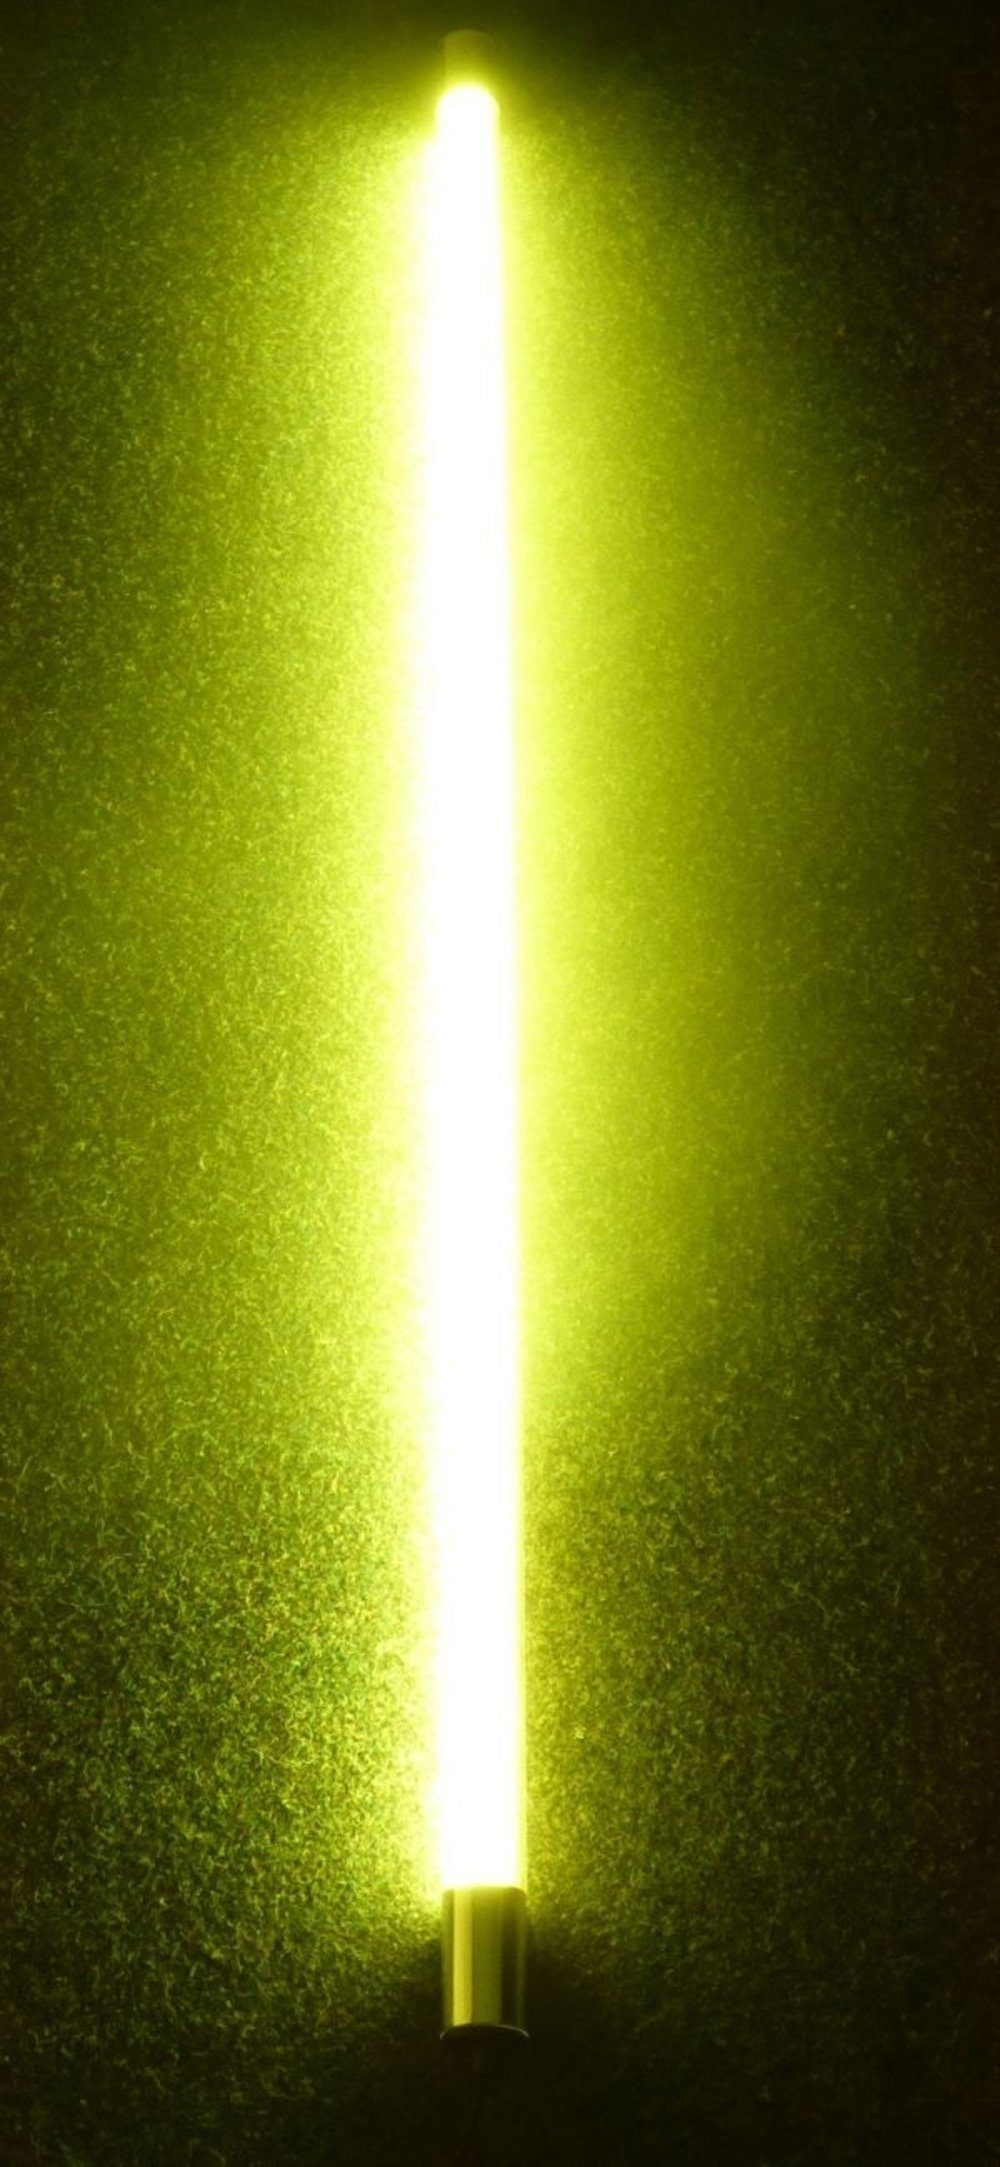 XENON LED Außen-Wandleuchte LED Gabionen Röhr m. Kunststoff-Röhre 123cm Gelb, LED Röhre T8, Xenon